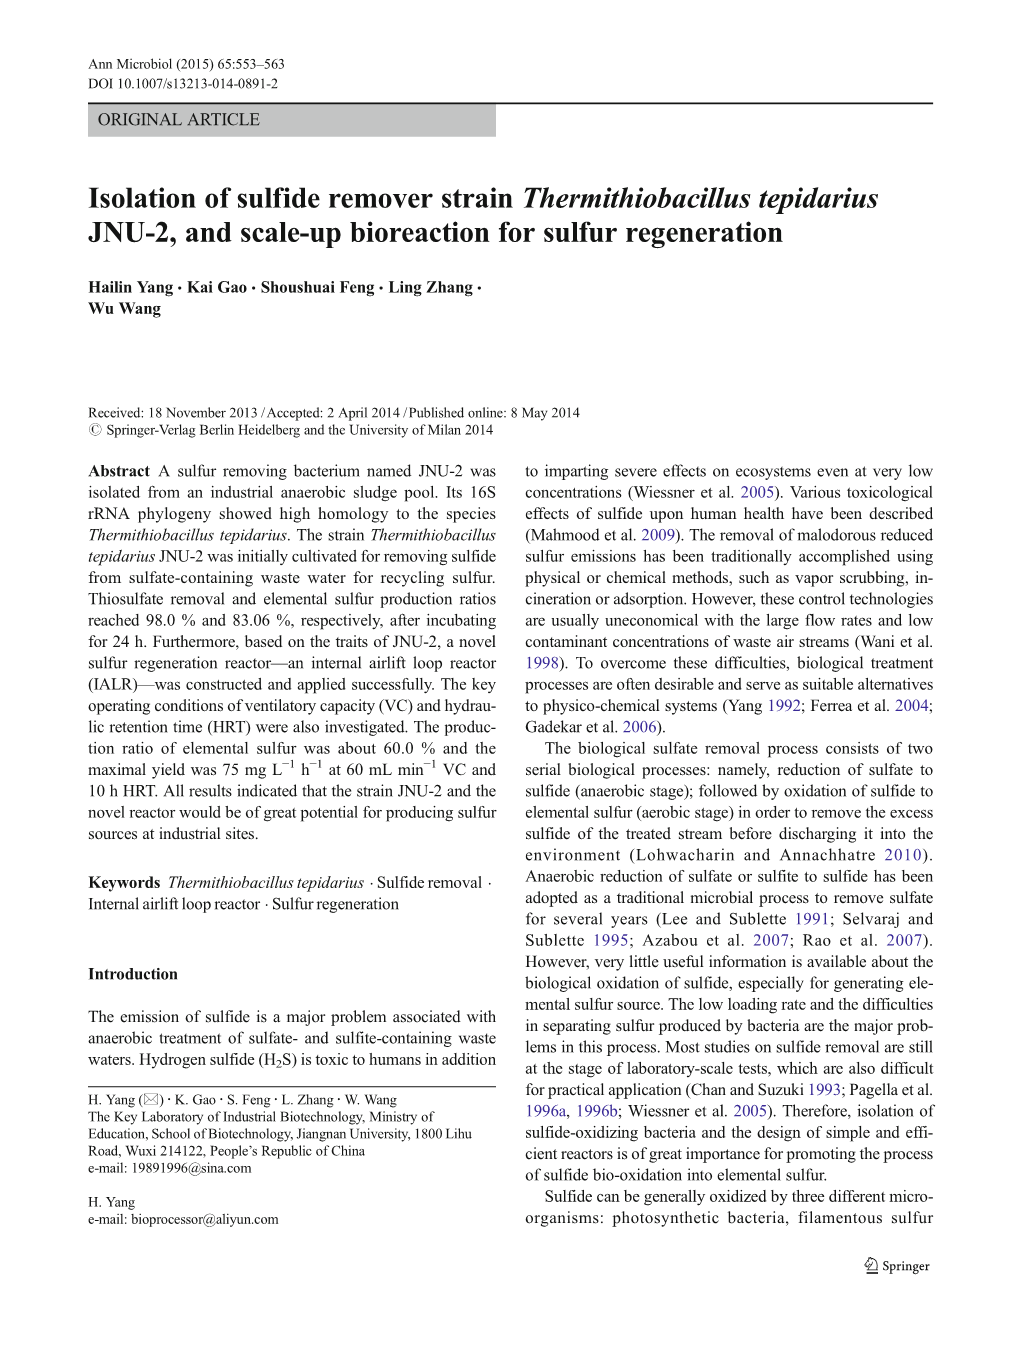 Isolation of Sulfide Remover Strain Thermithiobacillus Tepidarius JNU-2, and Scale-Up Bioreaction for Sulfur Regeneration